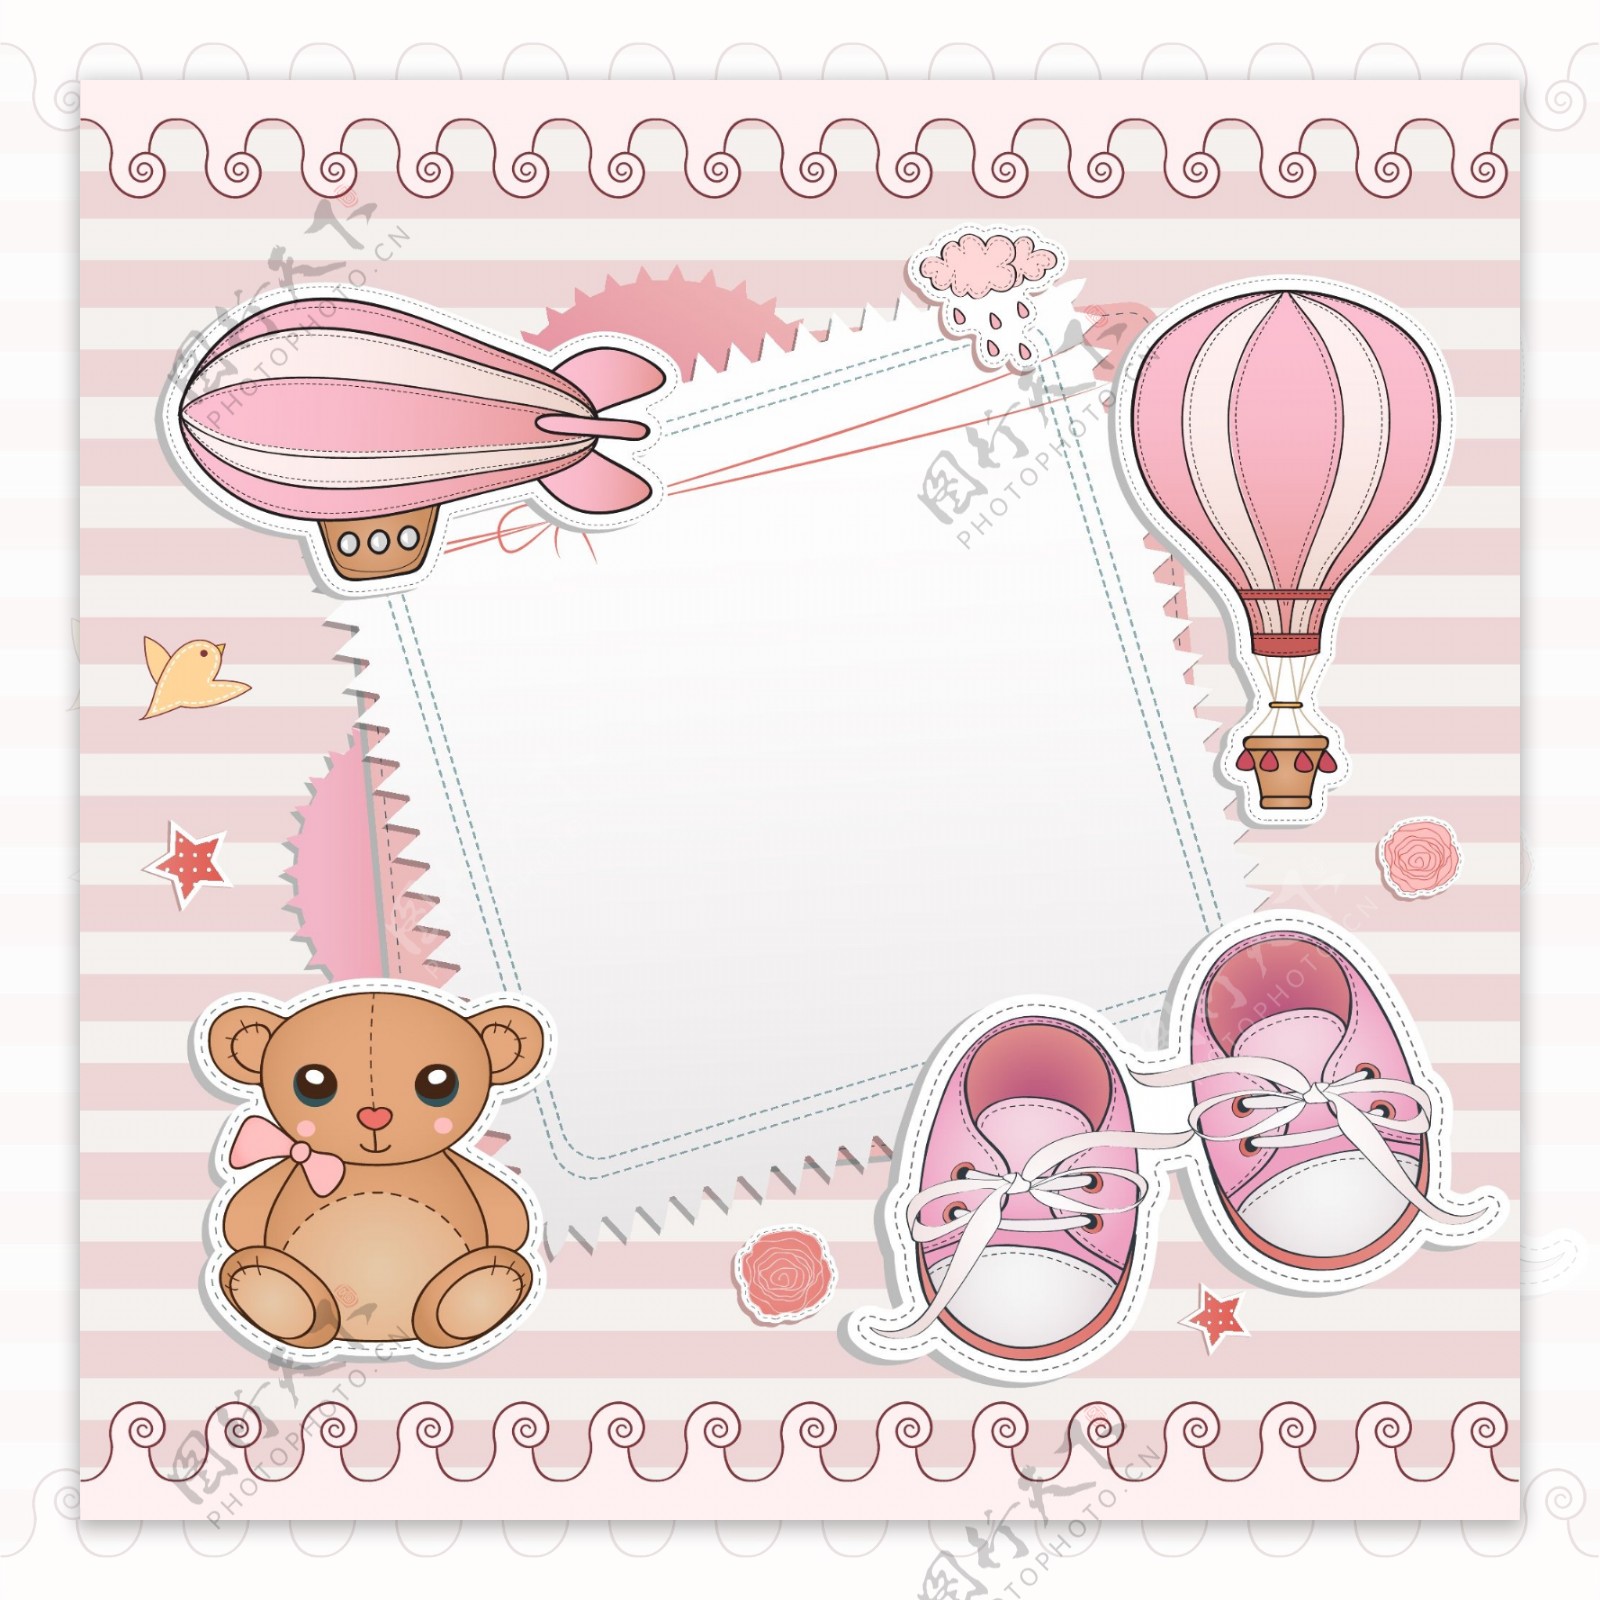 粉色婴儿元素卡片矢量素材